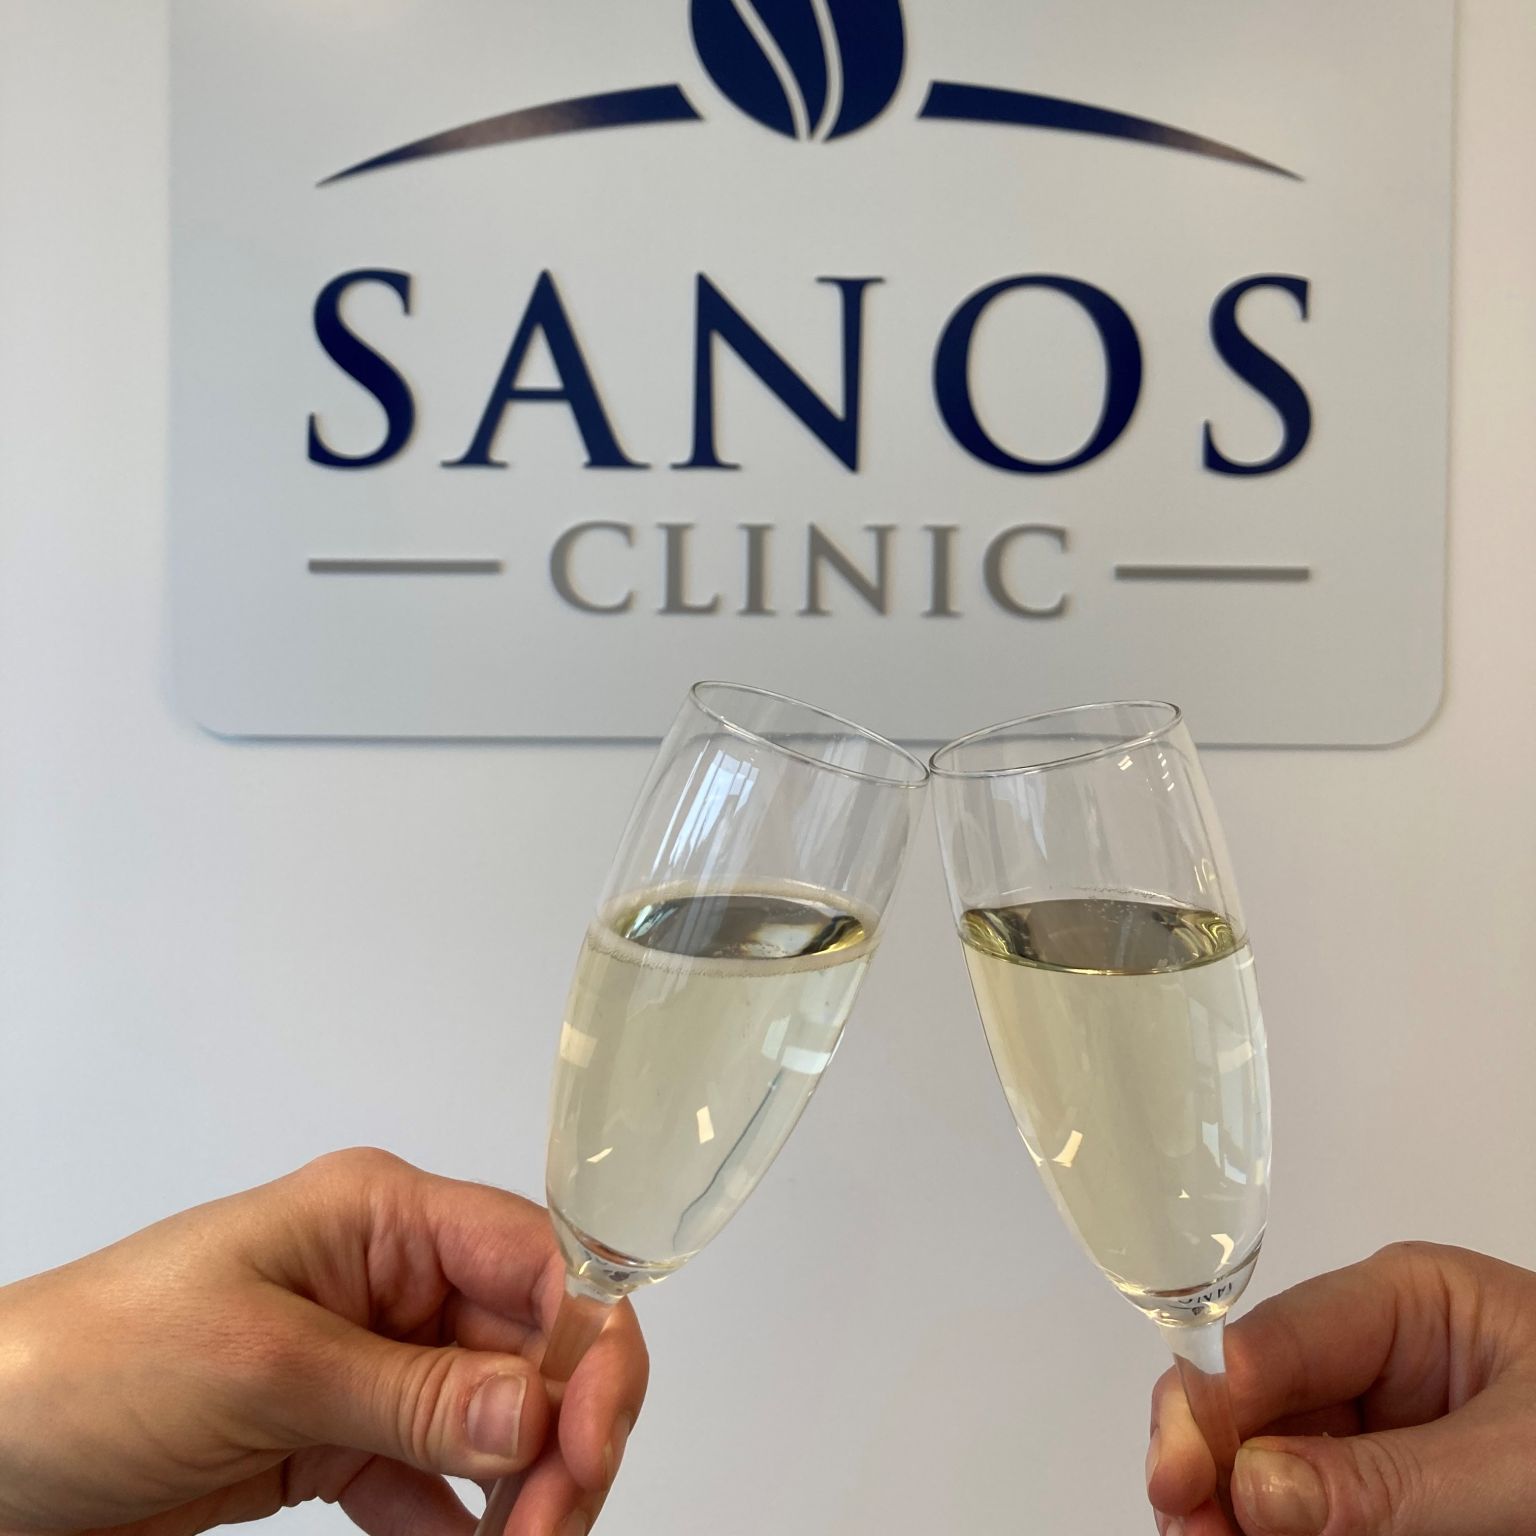 Sanos Clinic